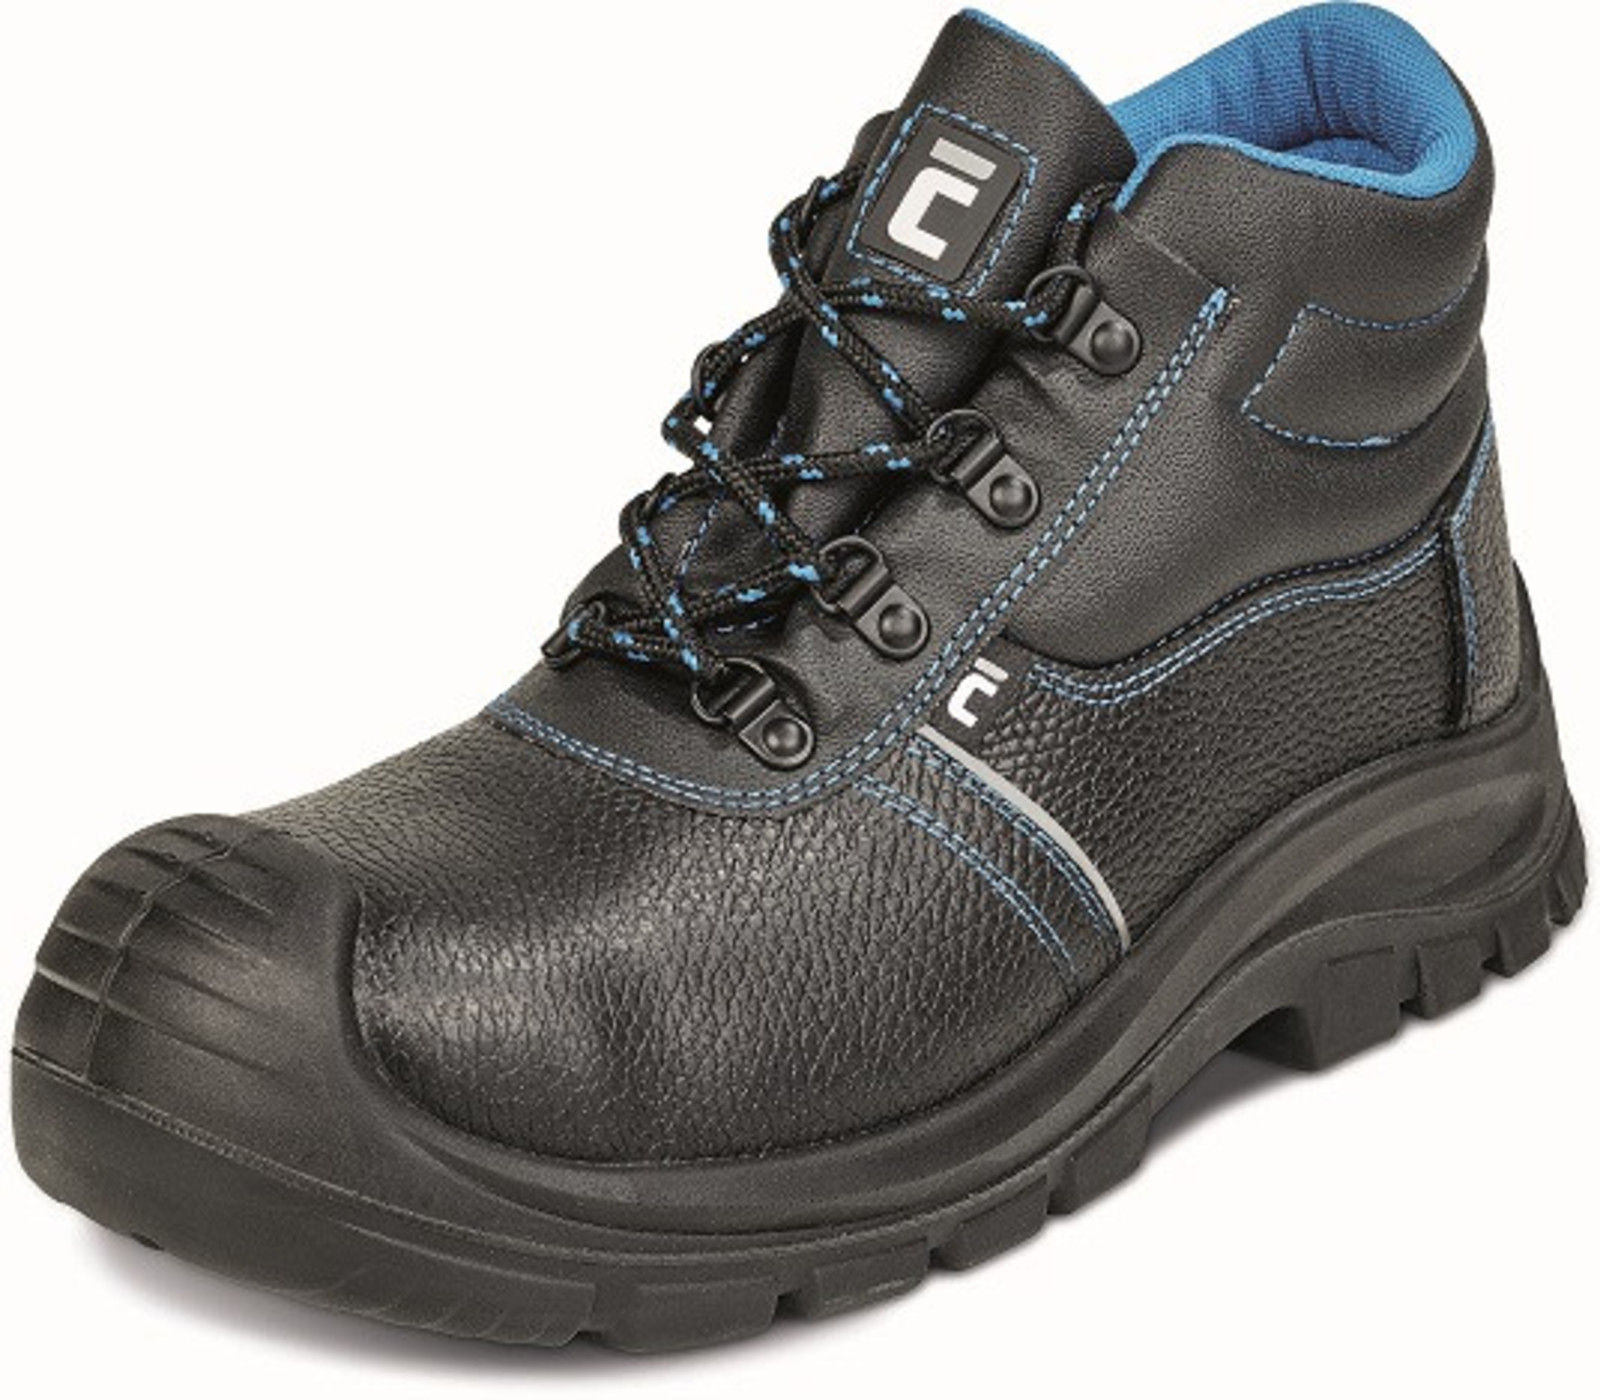 Bezpečnostná obuv Raven XT S1P - veľkosť: 37, farba: čierna